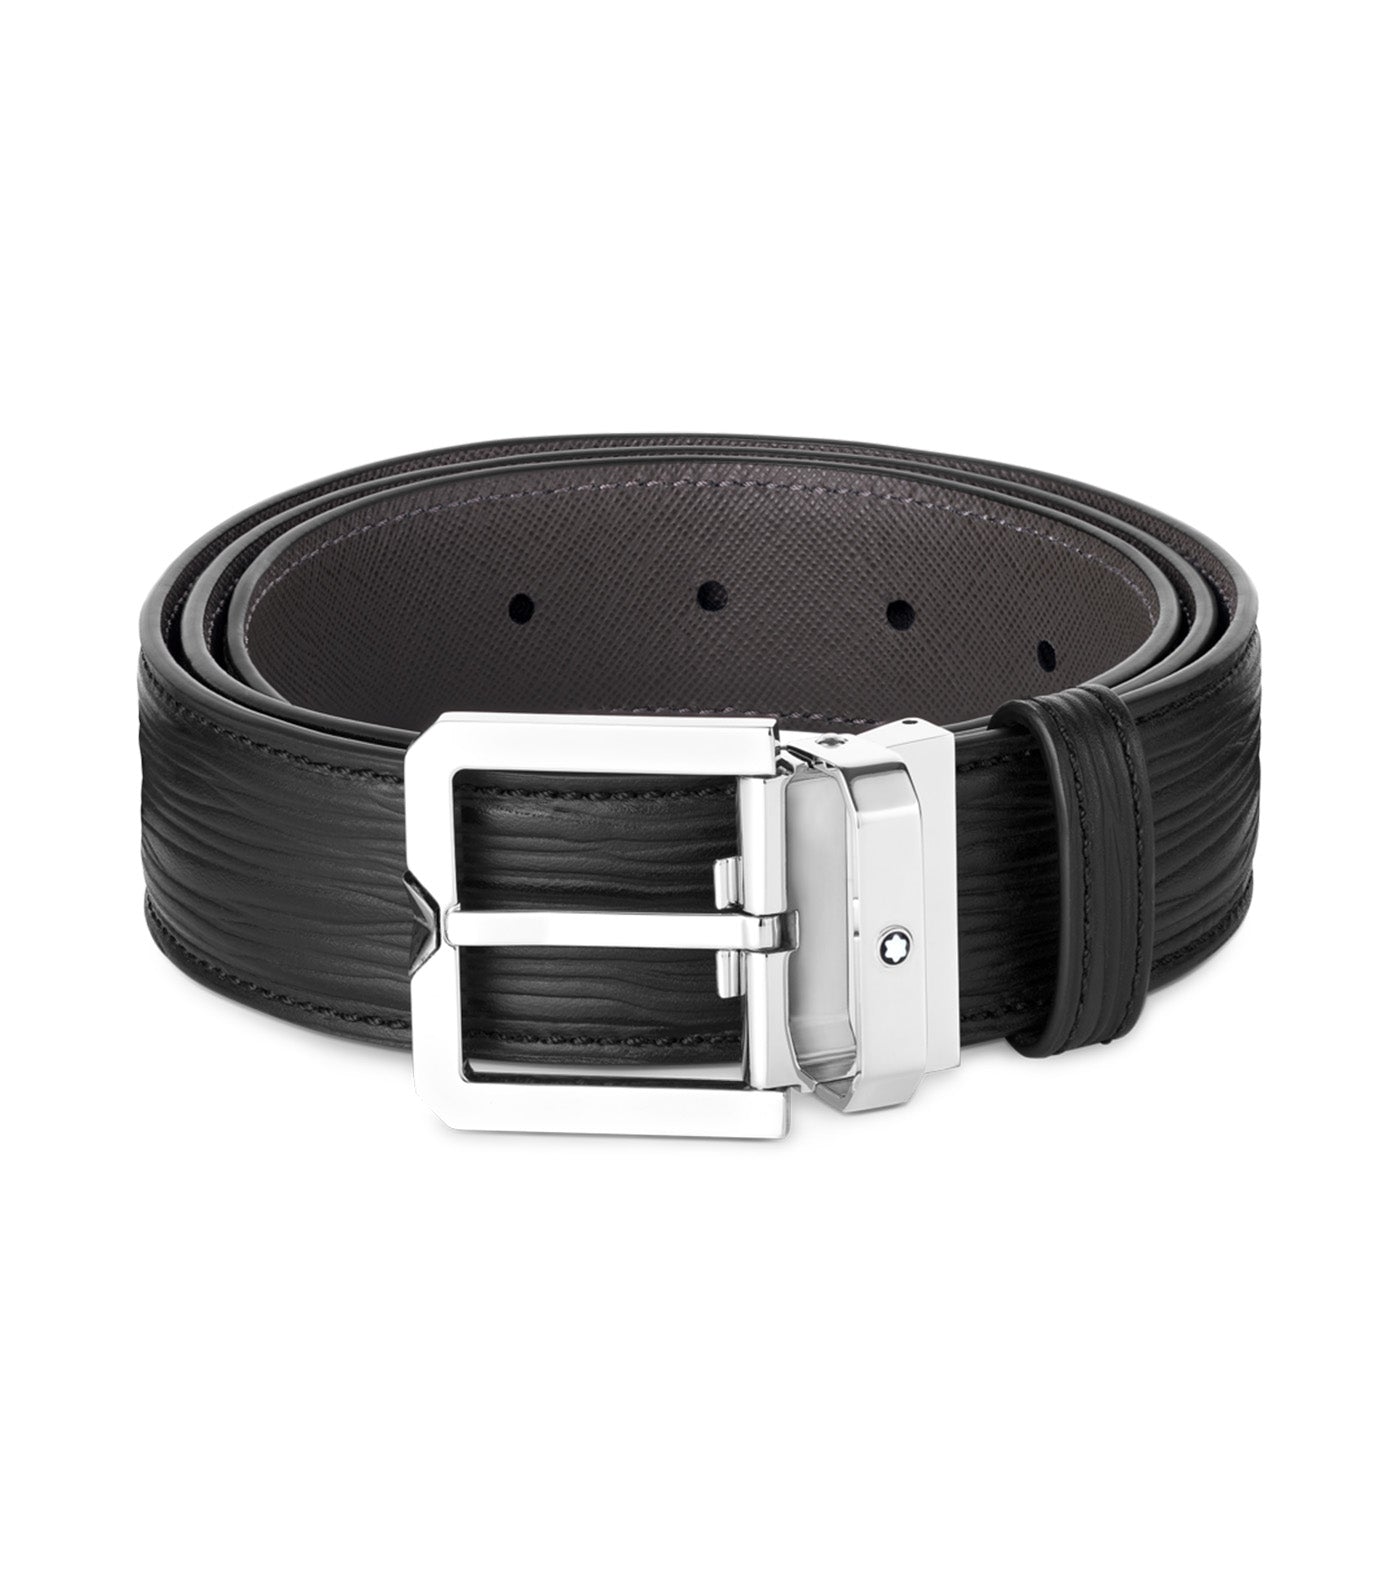 35mm Leather Belt Black